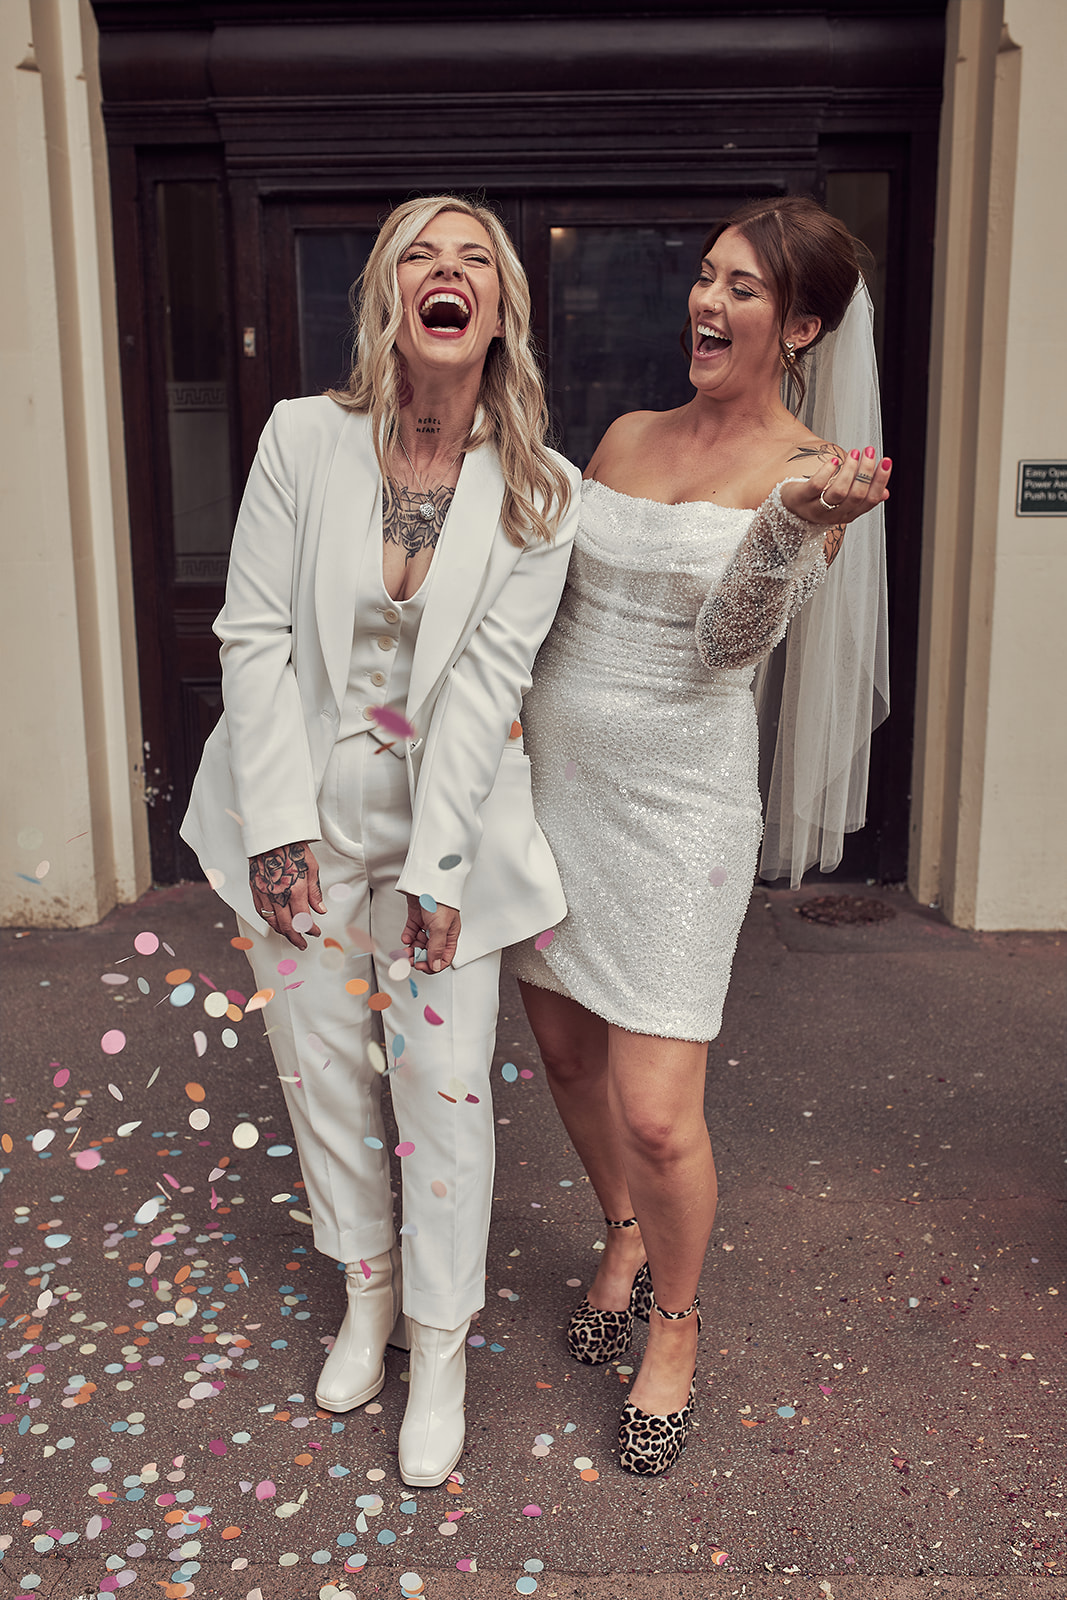 brides laughing hard